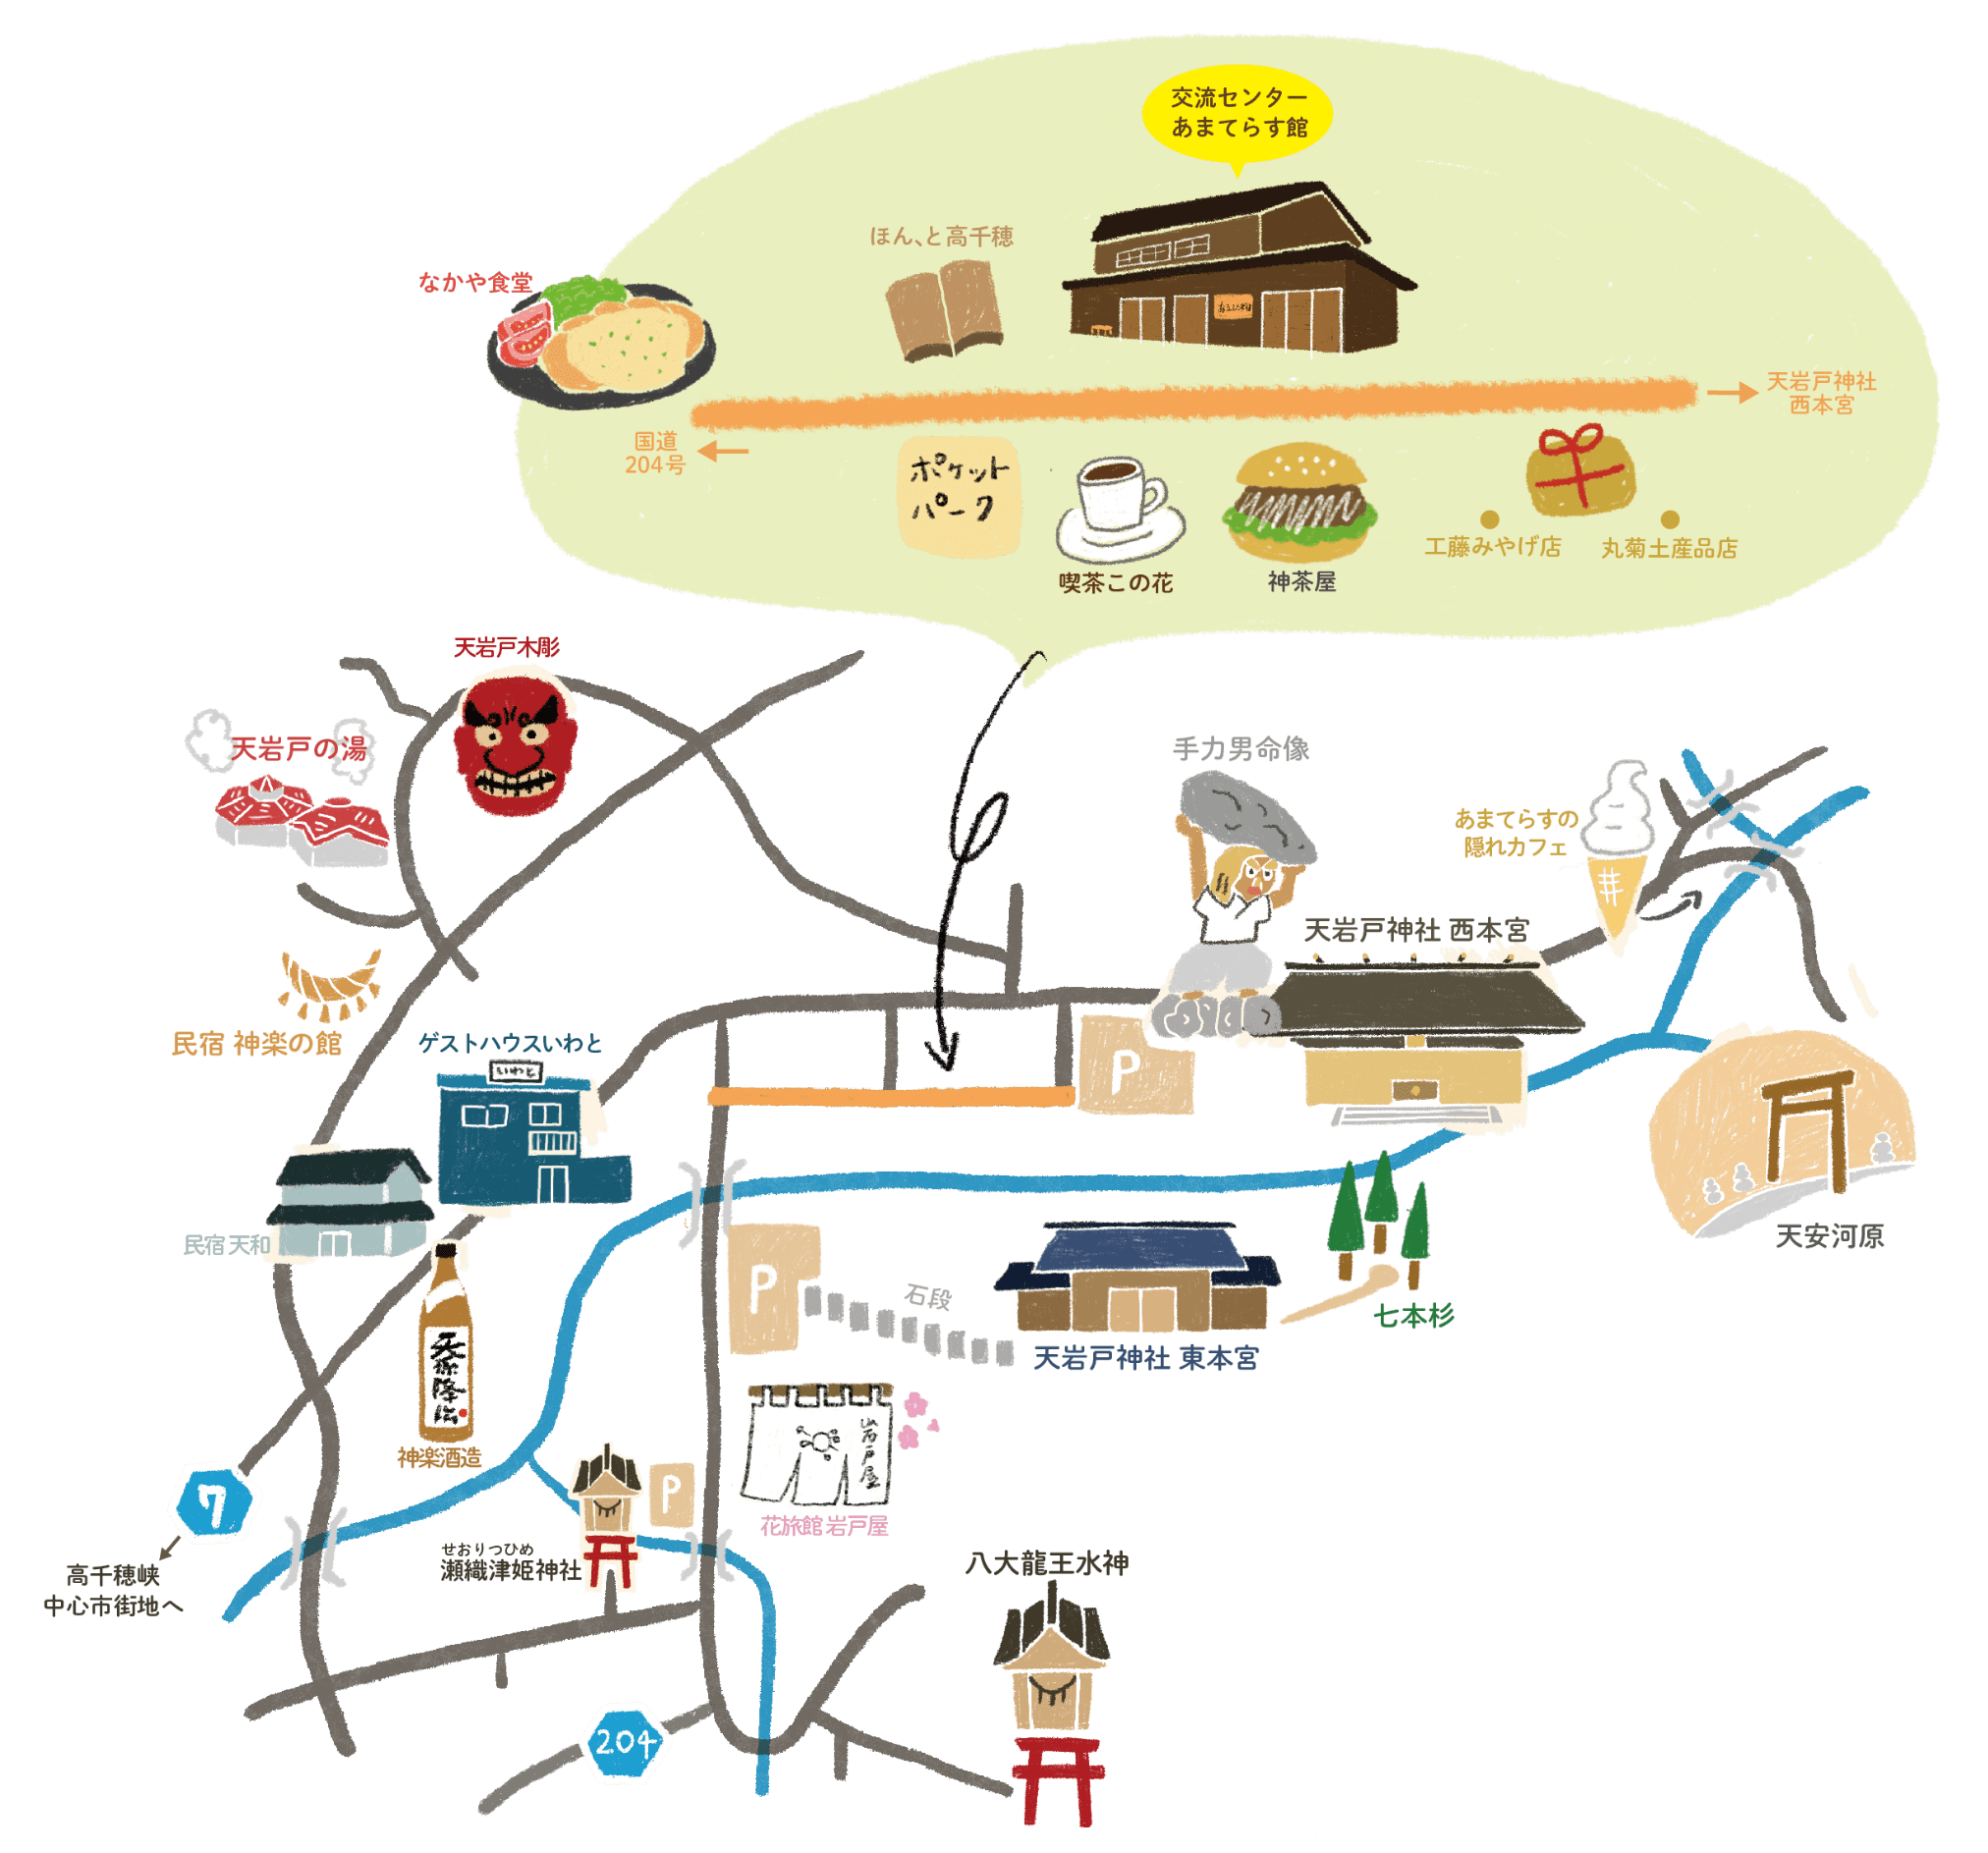 岩戸地区観光マップ